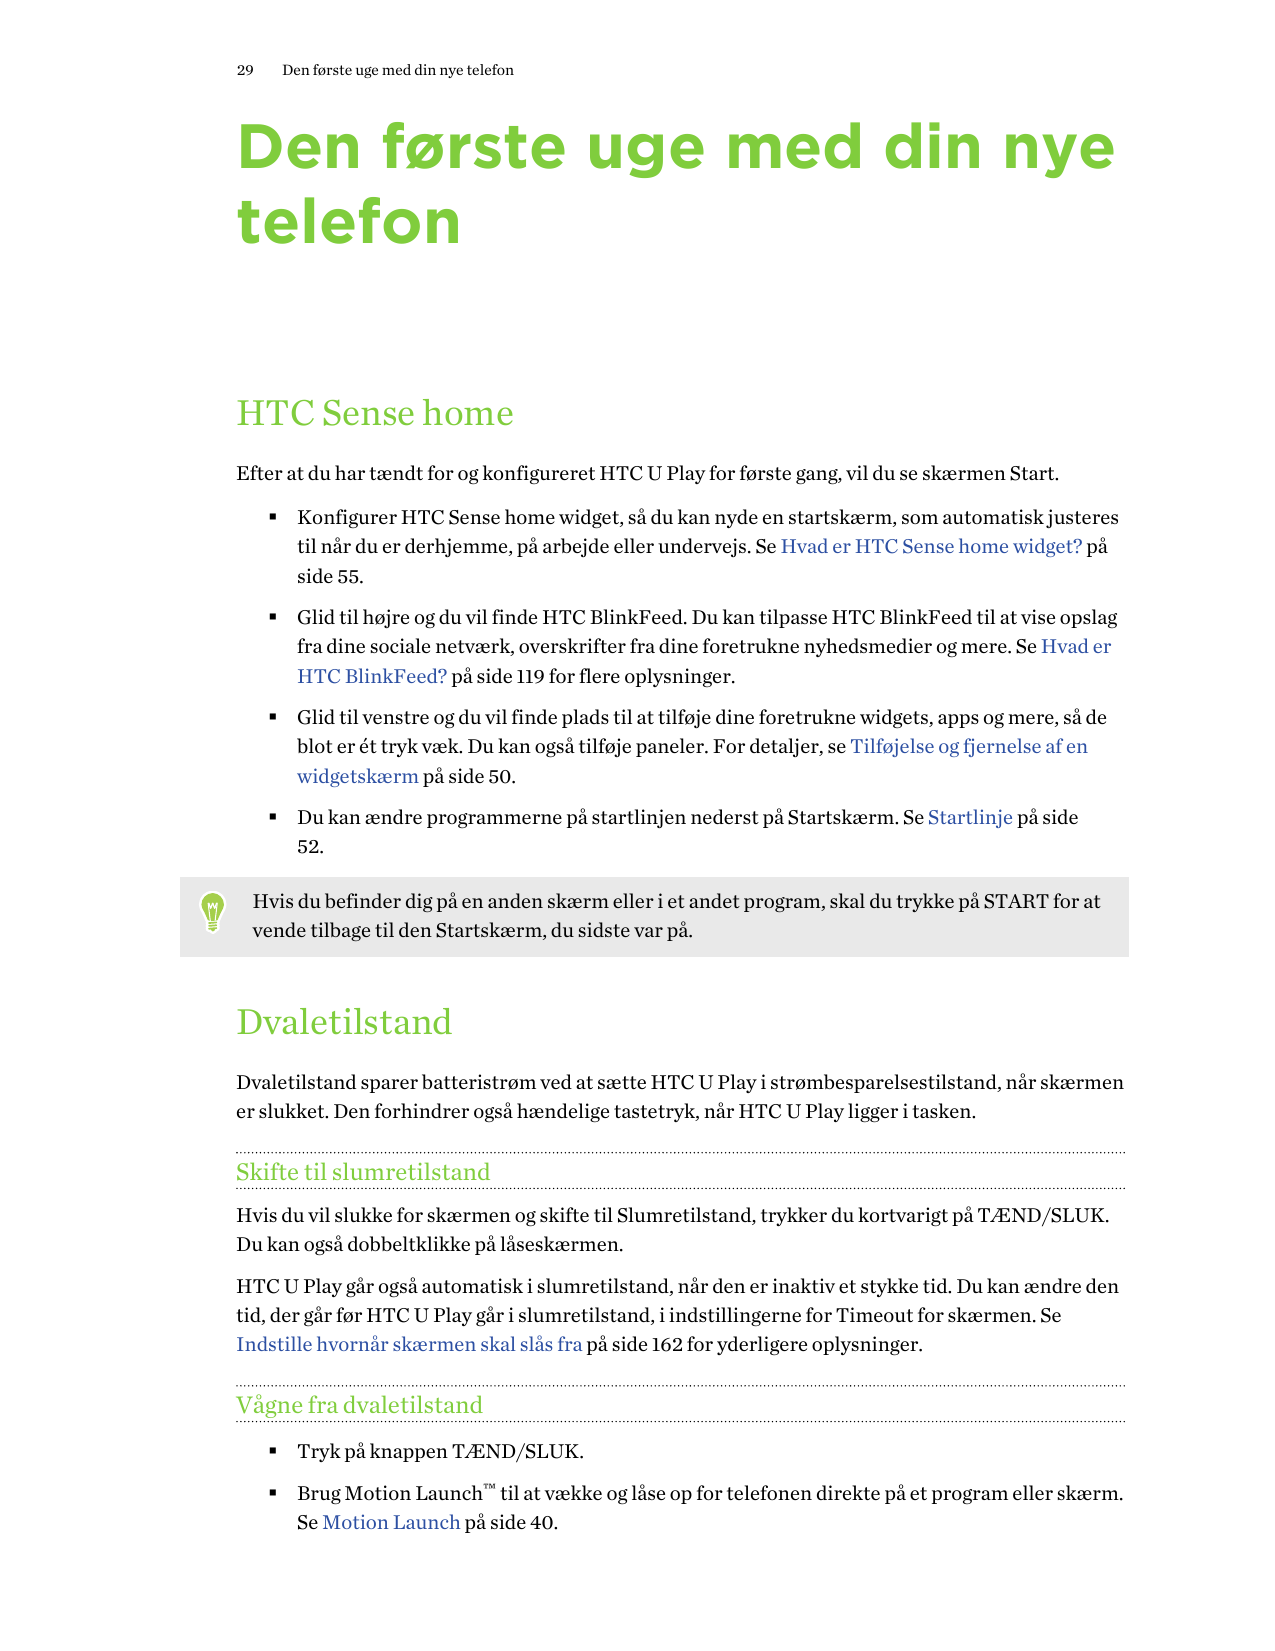 29Den første uge med din nye telefonDen første uge med din nyetelefonHTC Sense homeEfter at du har tændt for og konfigureret HTC